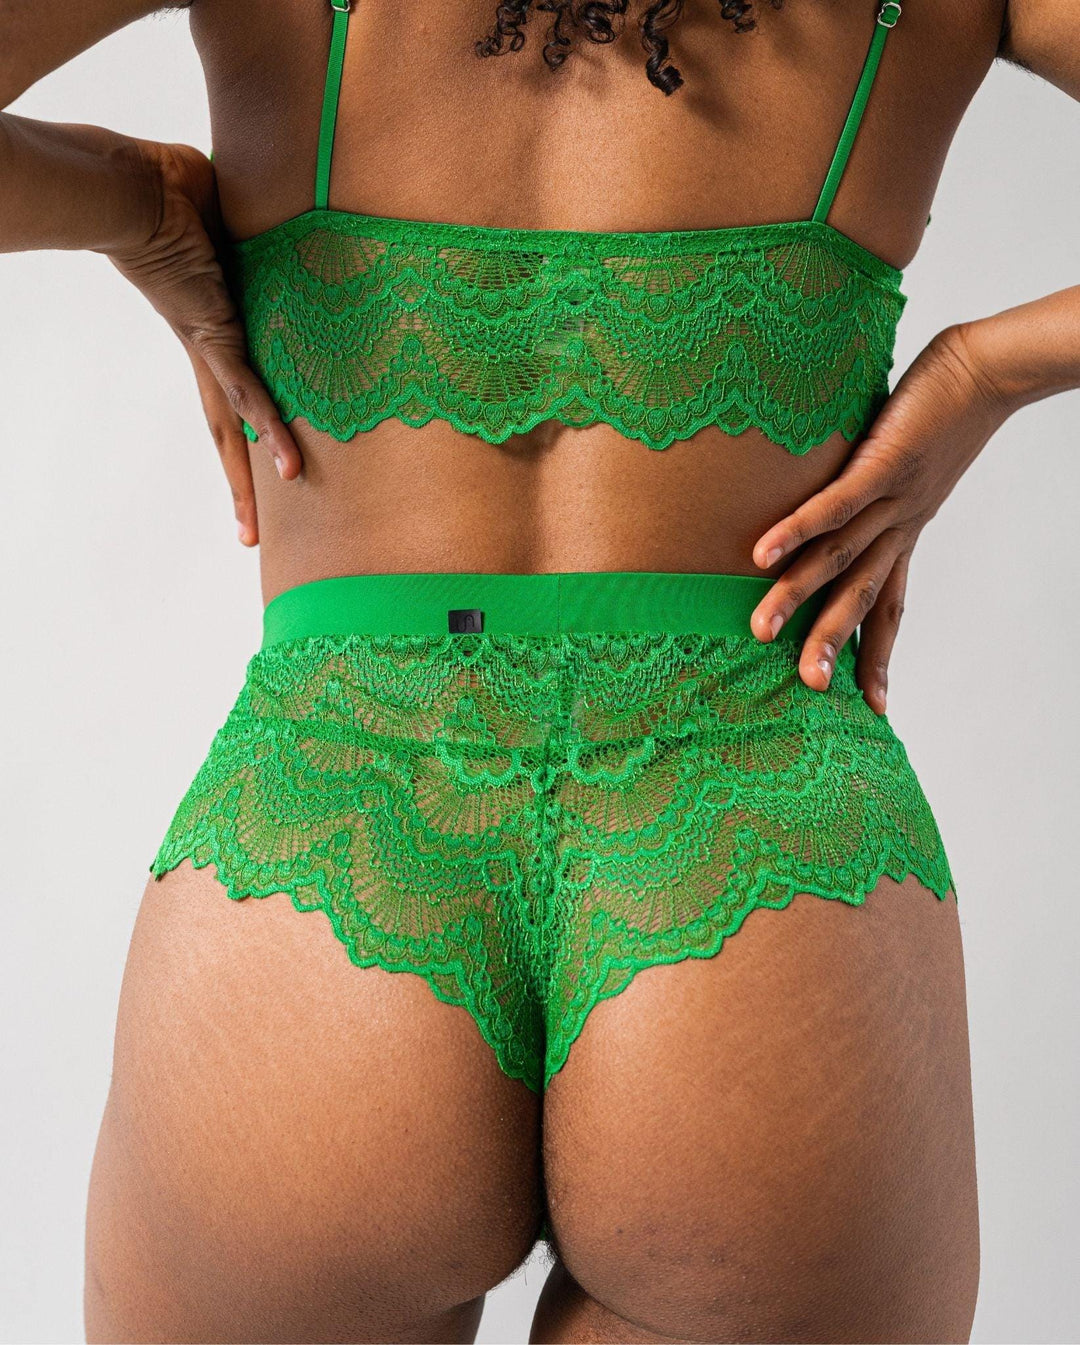 GREEN IVY 💚 Our signature - Understatement Underwear